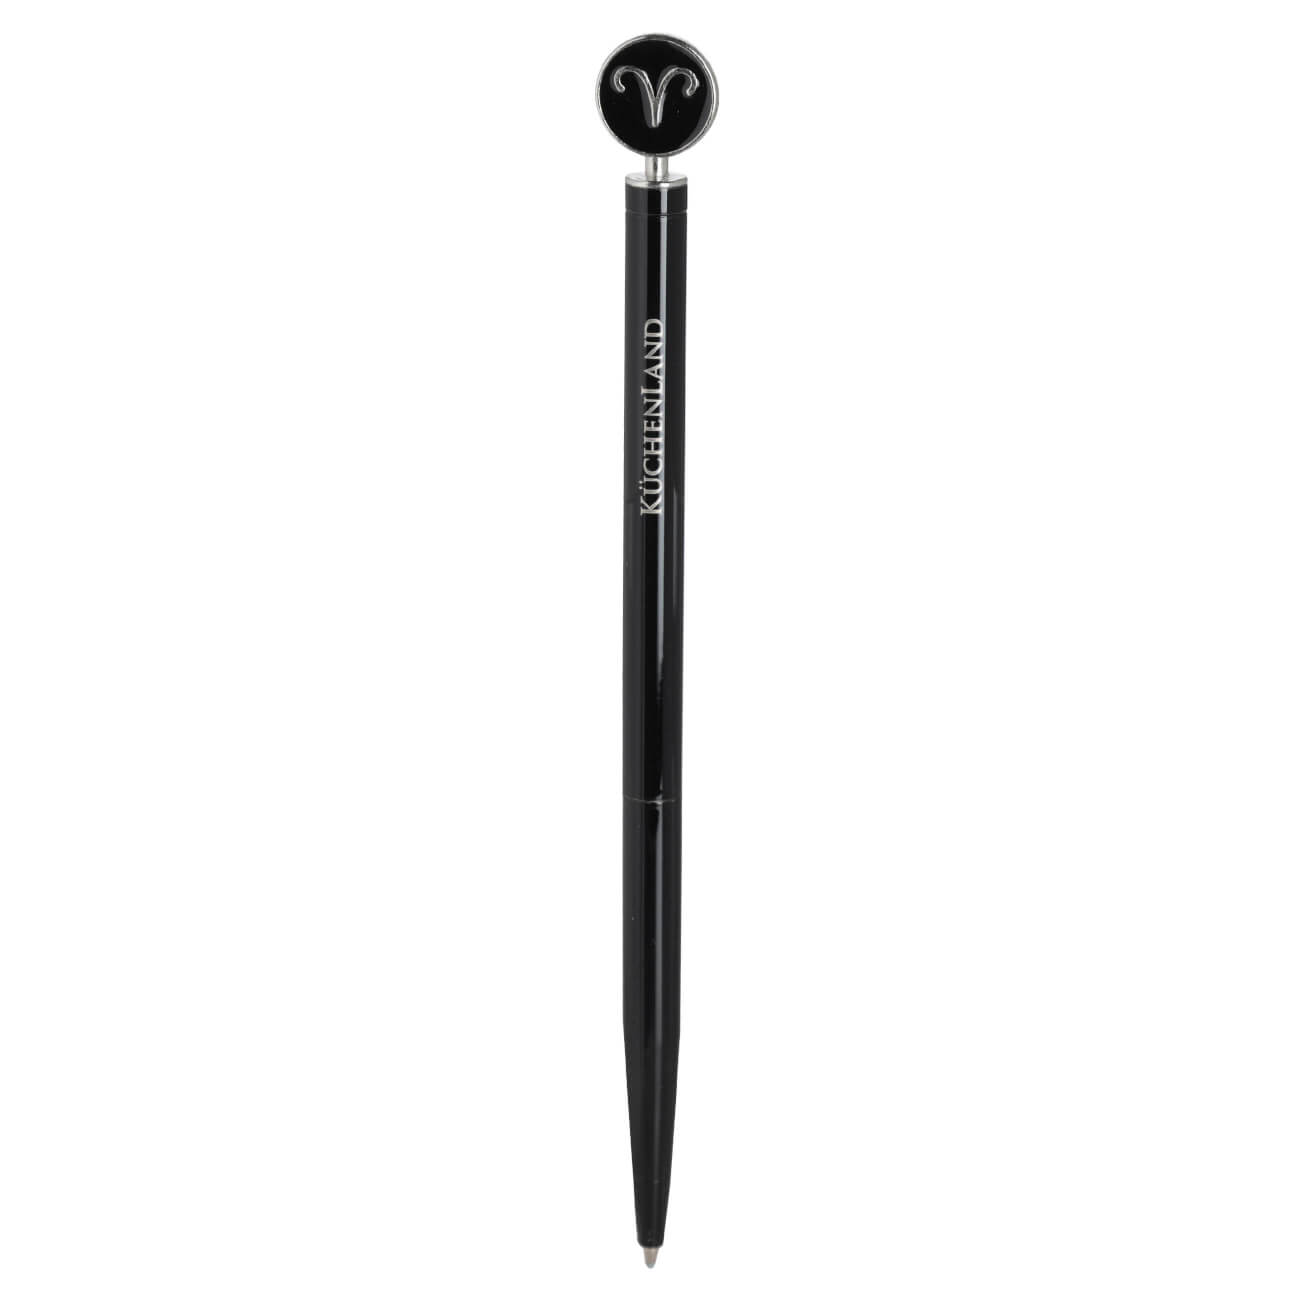 Ручка шариковая, 15 см, с фигуркой, сталь, черно-серебристая, Овен, Zodiac масляная шариковая ручка офисмаг